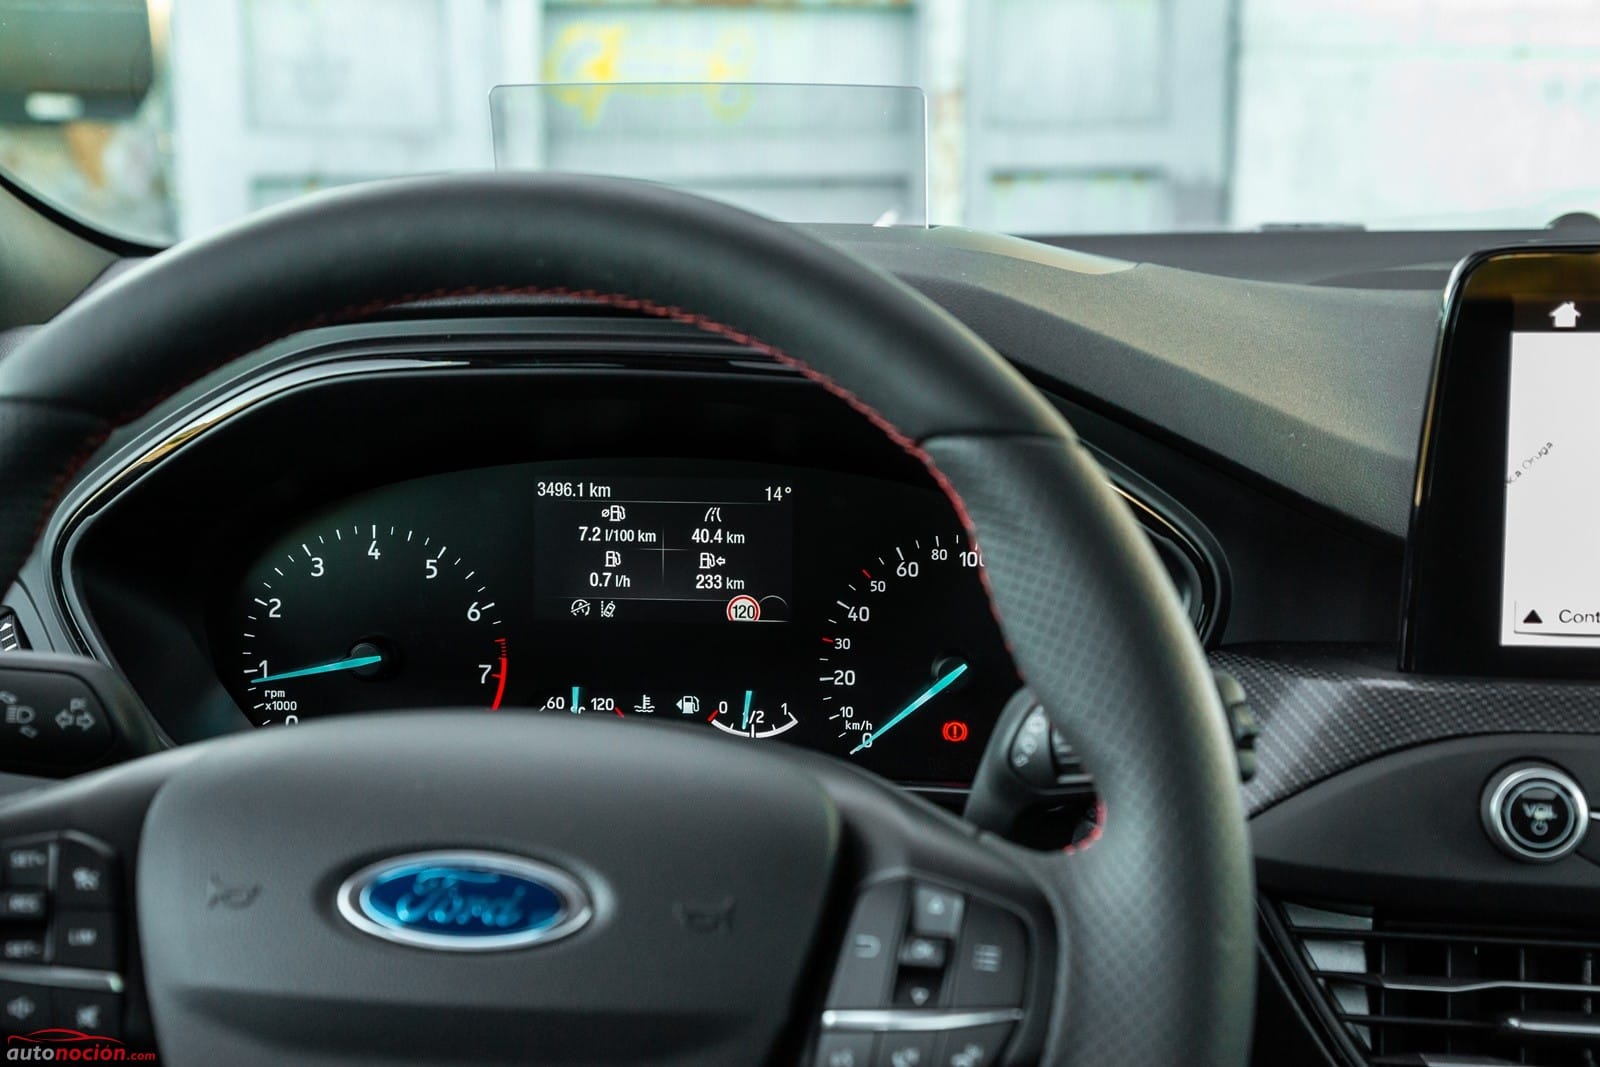 Opinión y prueba Ford Focus EcoBoost 182 CV gasolina 2019